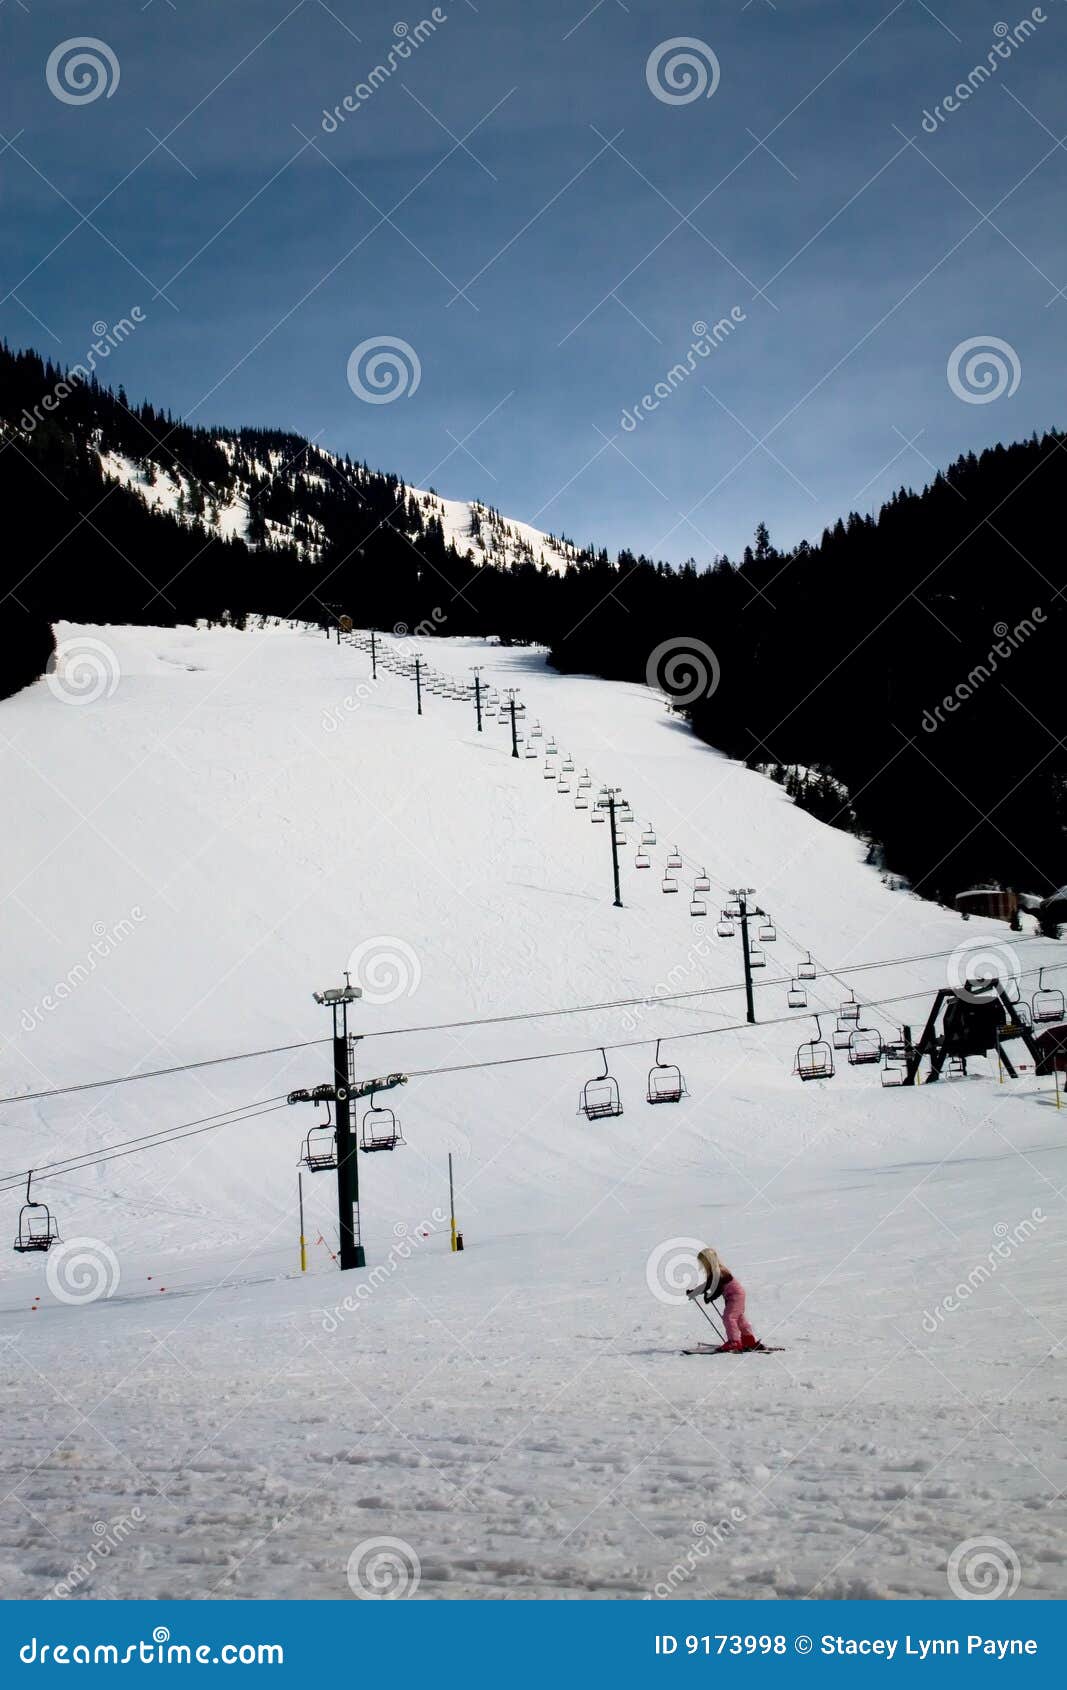 ski resort beginner hill with girl